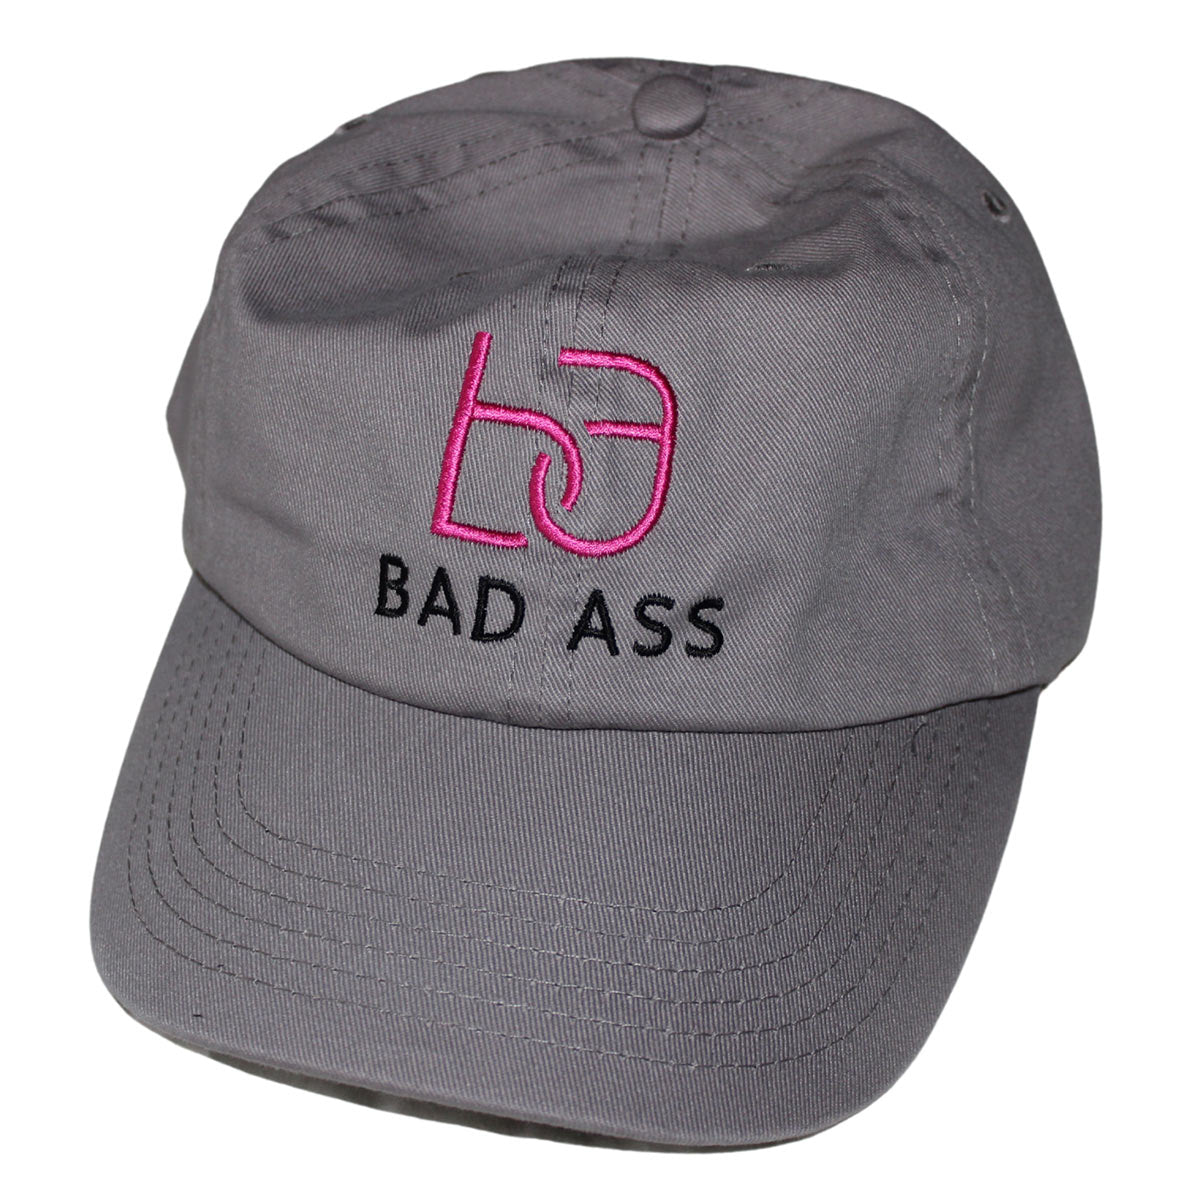 BA Badass Embroidered Cap